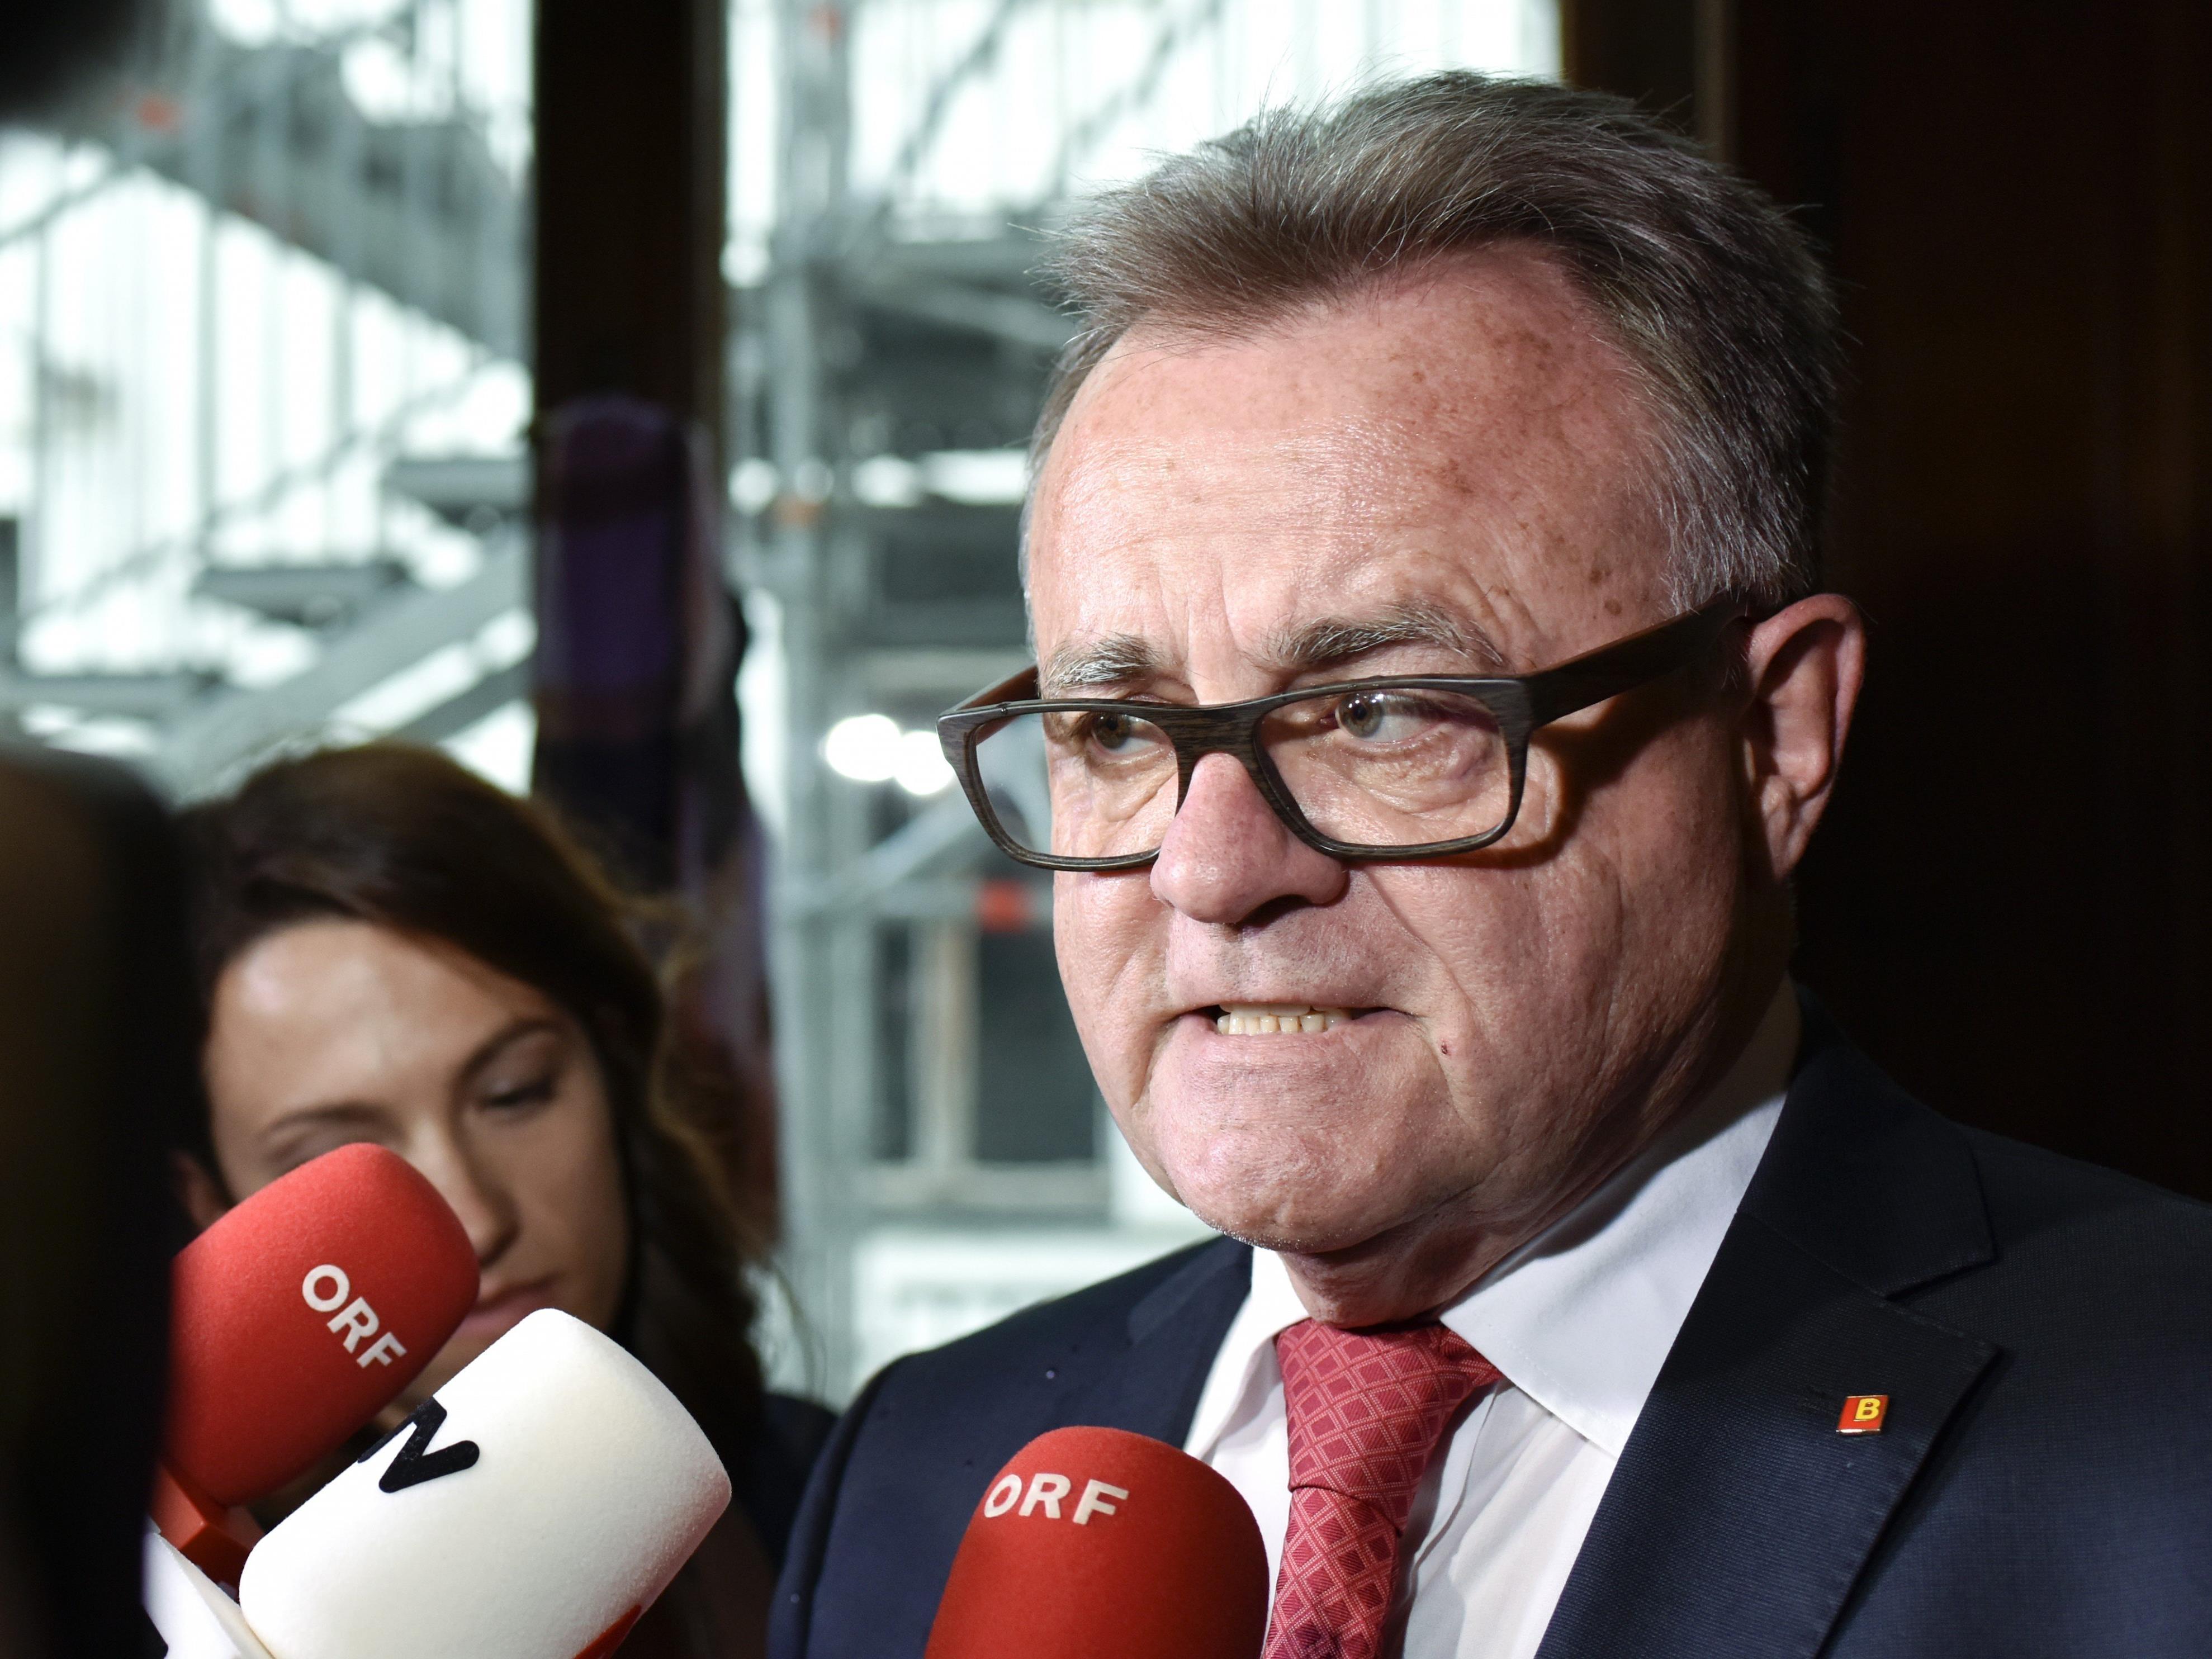 Landeshauptmann Niessl will sich bei der ORF-Landesdirektoren-Bestellung nicht einmischen